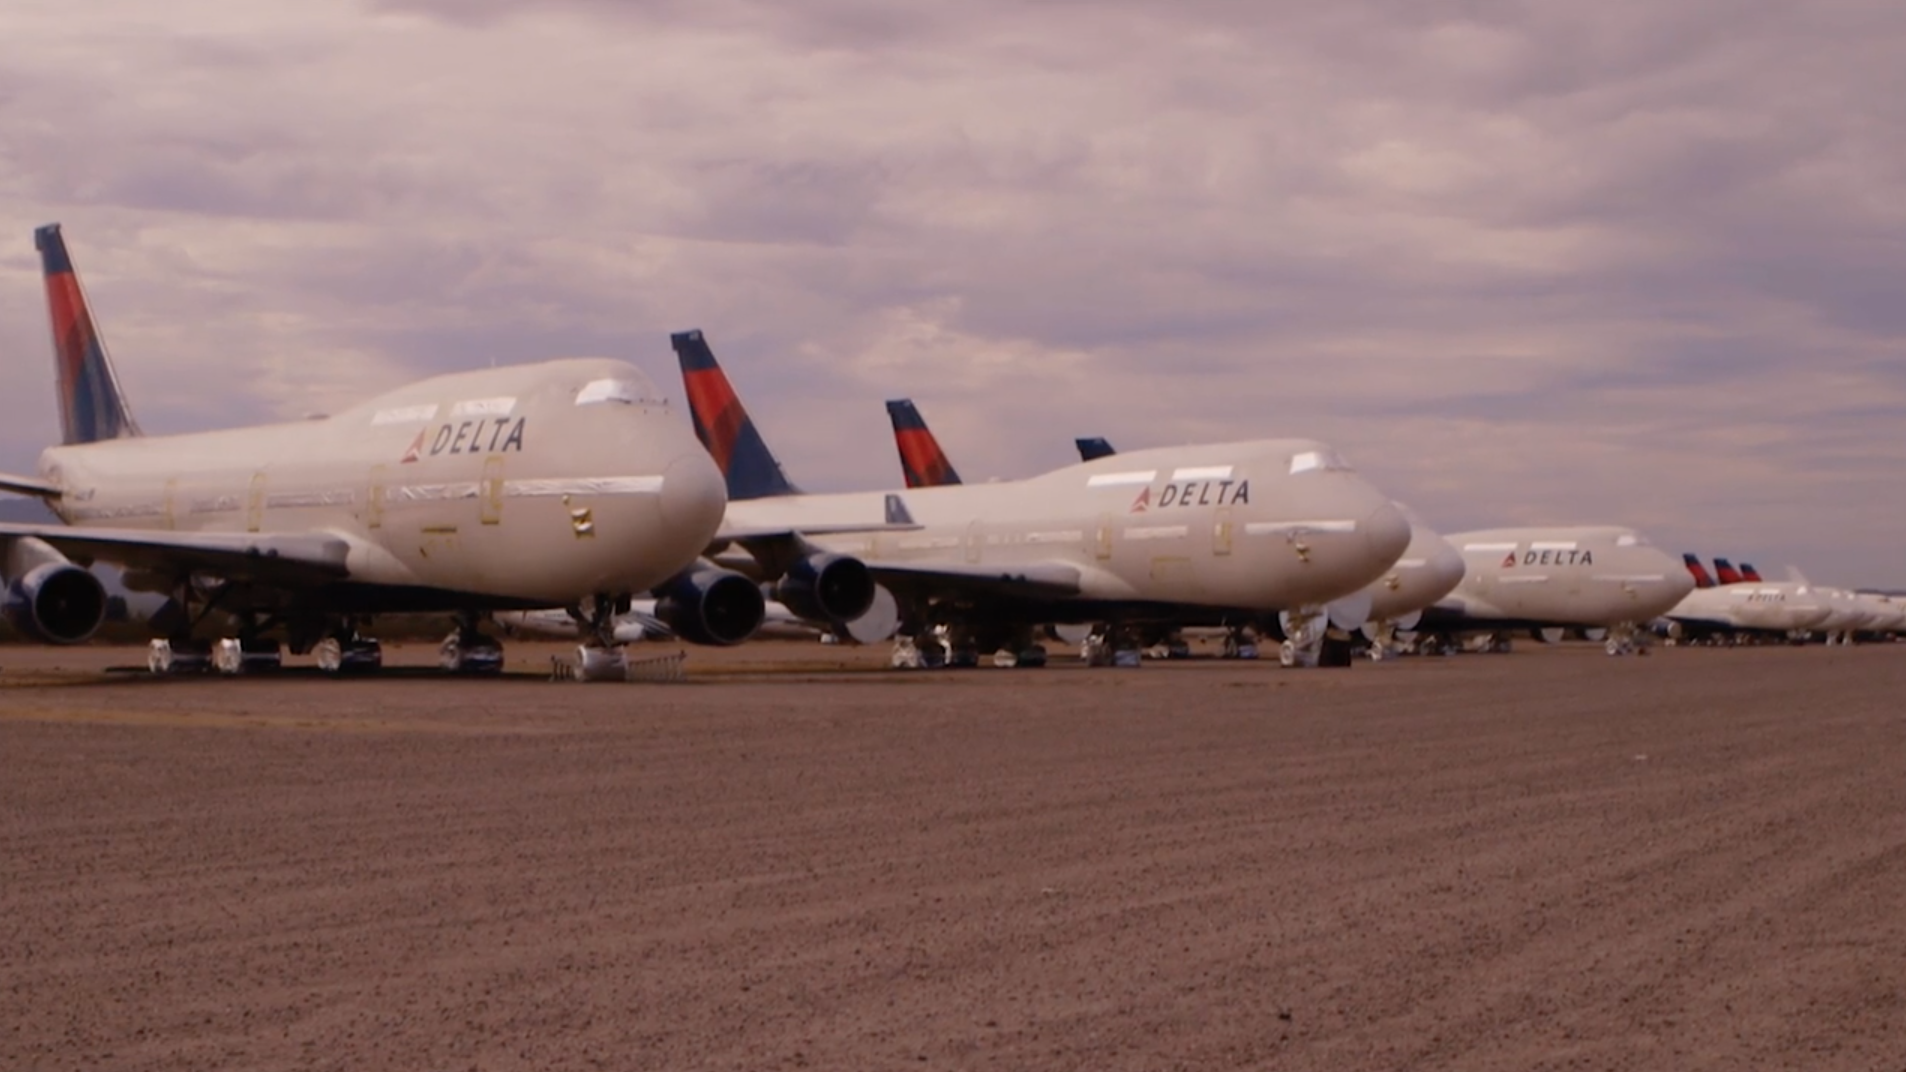 Hãng Delta Airlines đã cho nghỉ hưu đội máy bay Boeing 747, chính thức kết thúc hoạt động chở khách bằng loại máy bay này trên đất Mỹ.